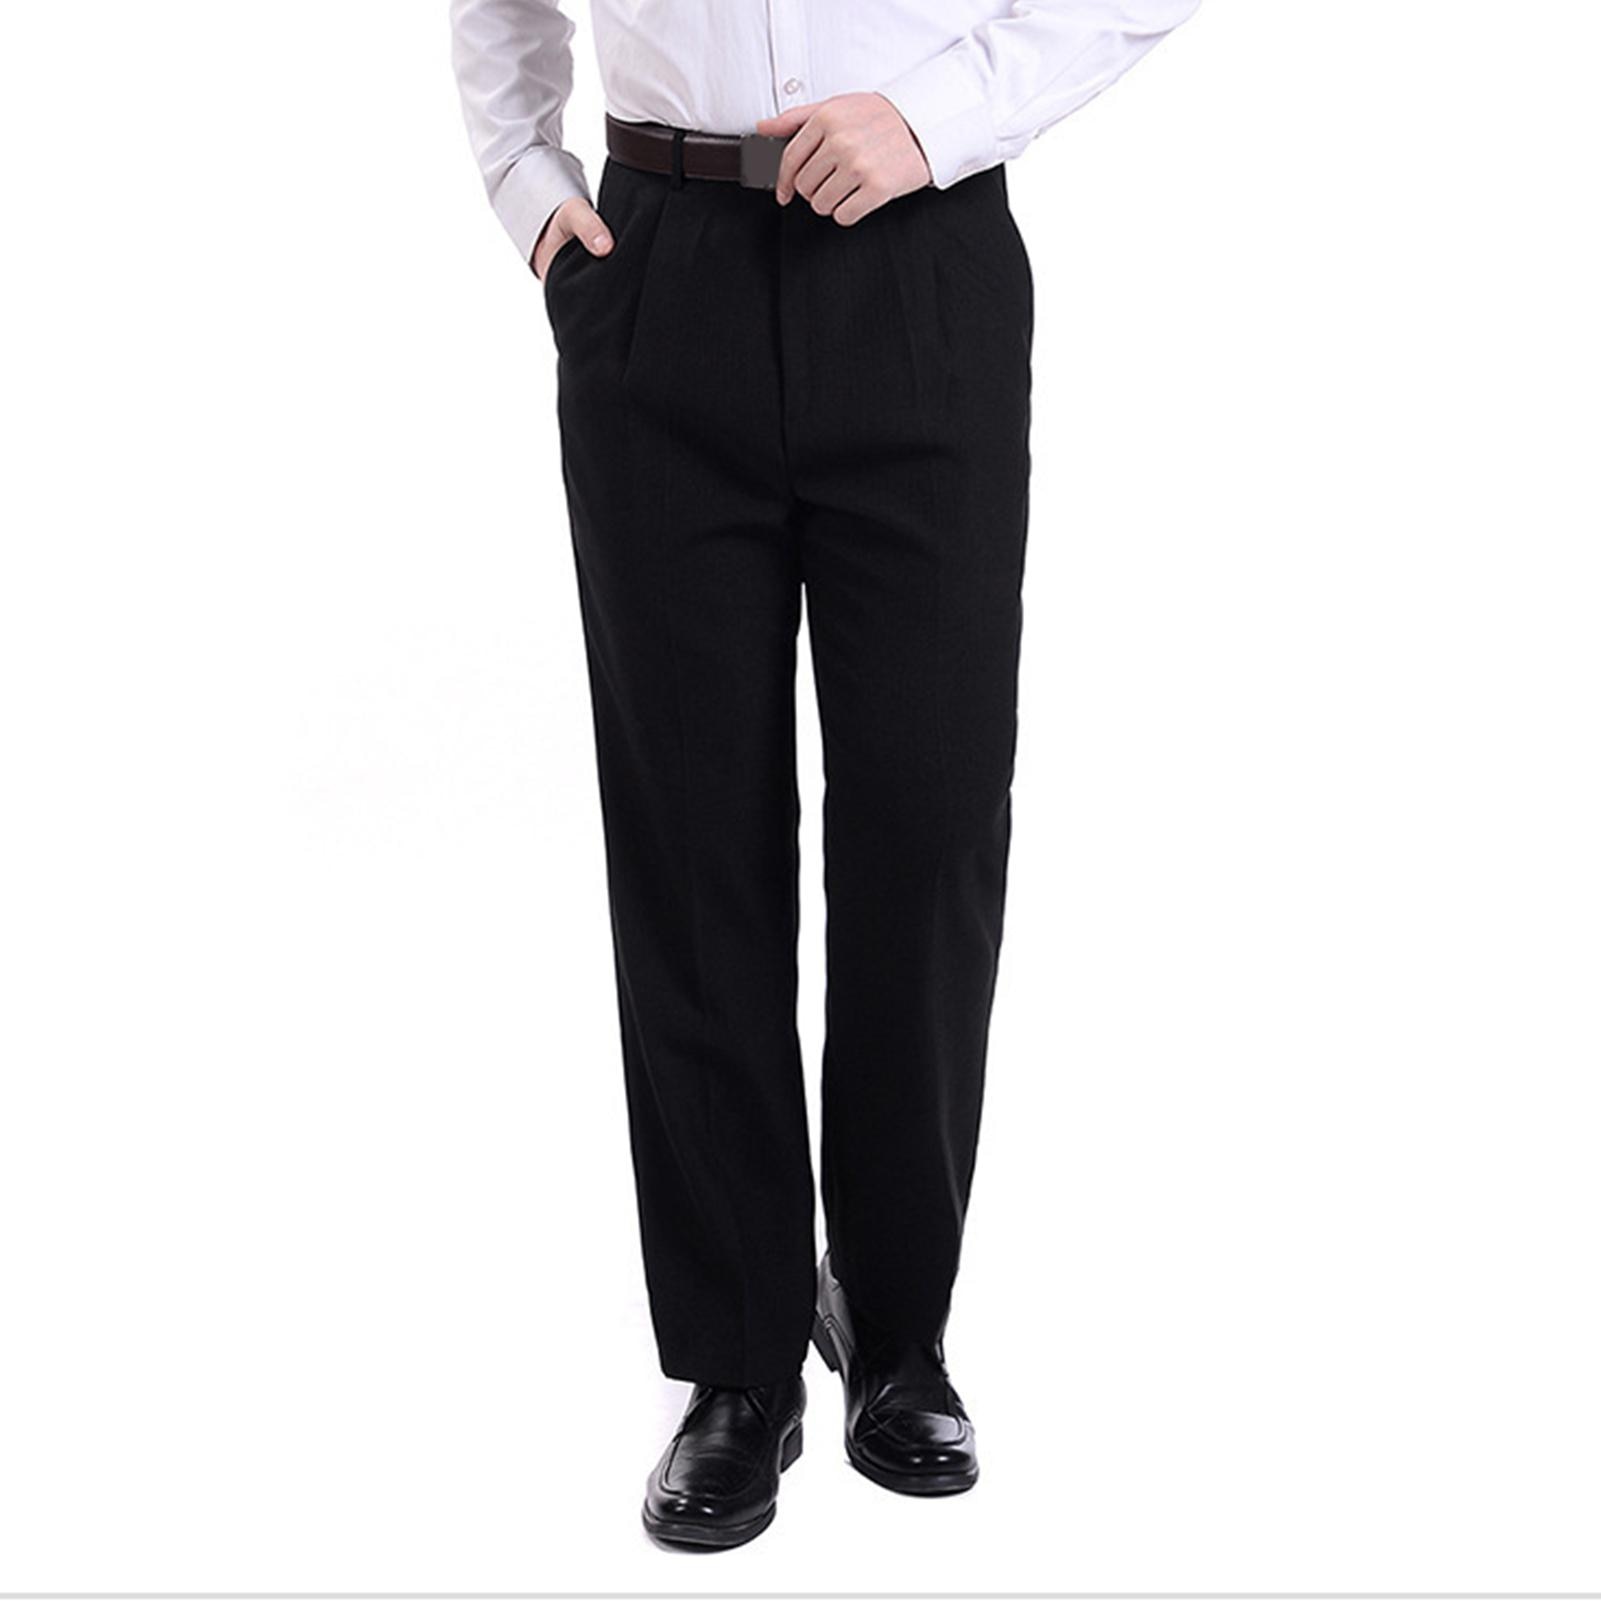 Men Autumn Warm Casual Long Trousers with Zipper Pockets Slims Fit Suit Pants